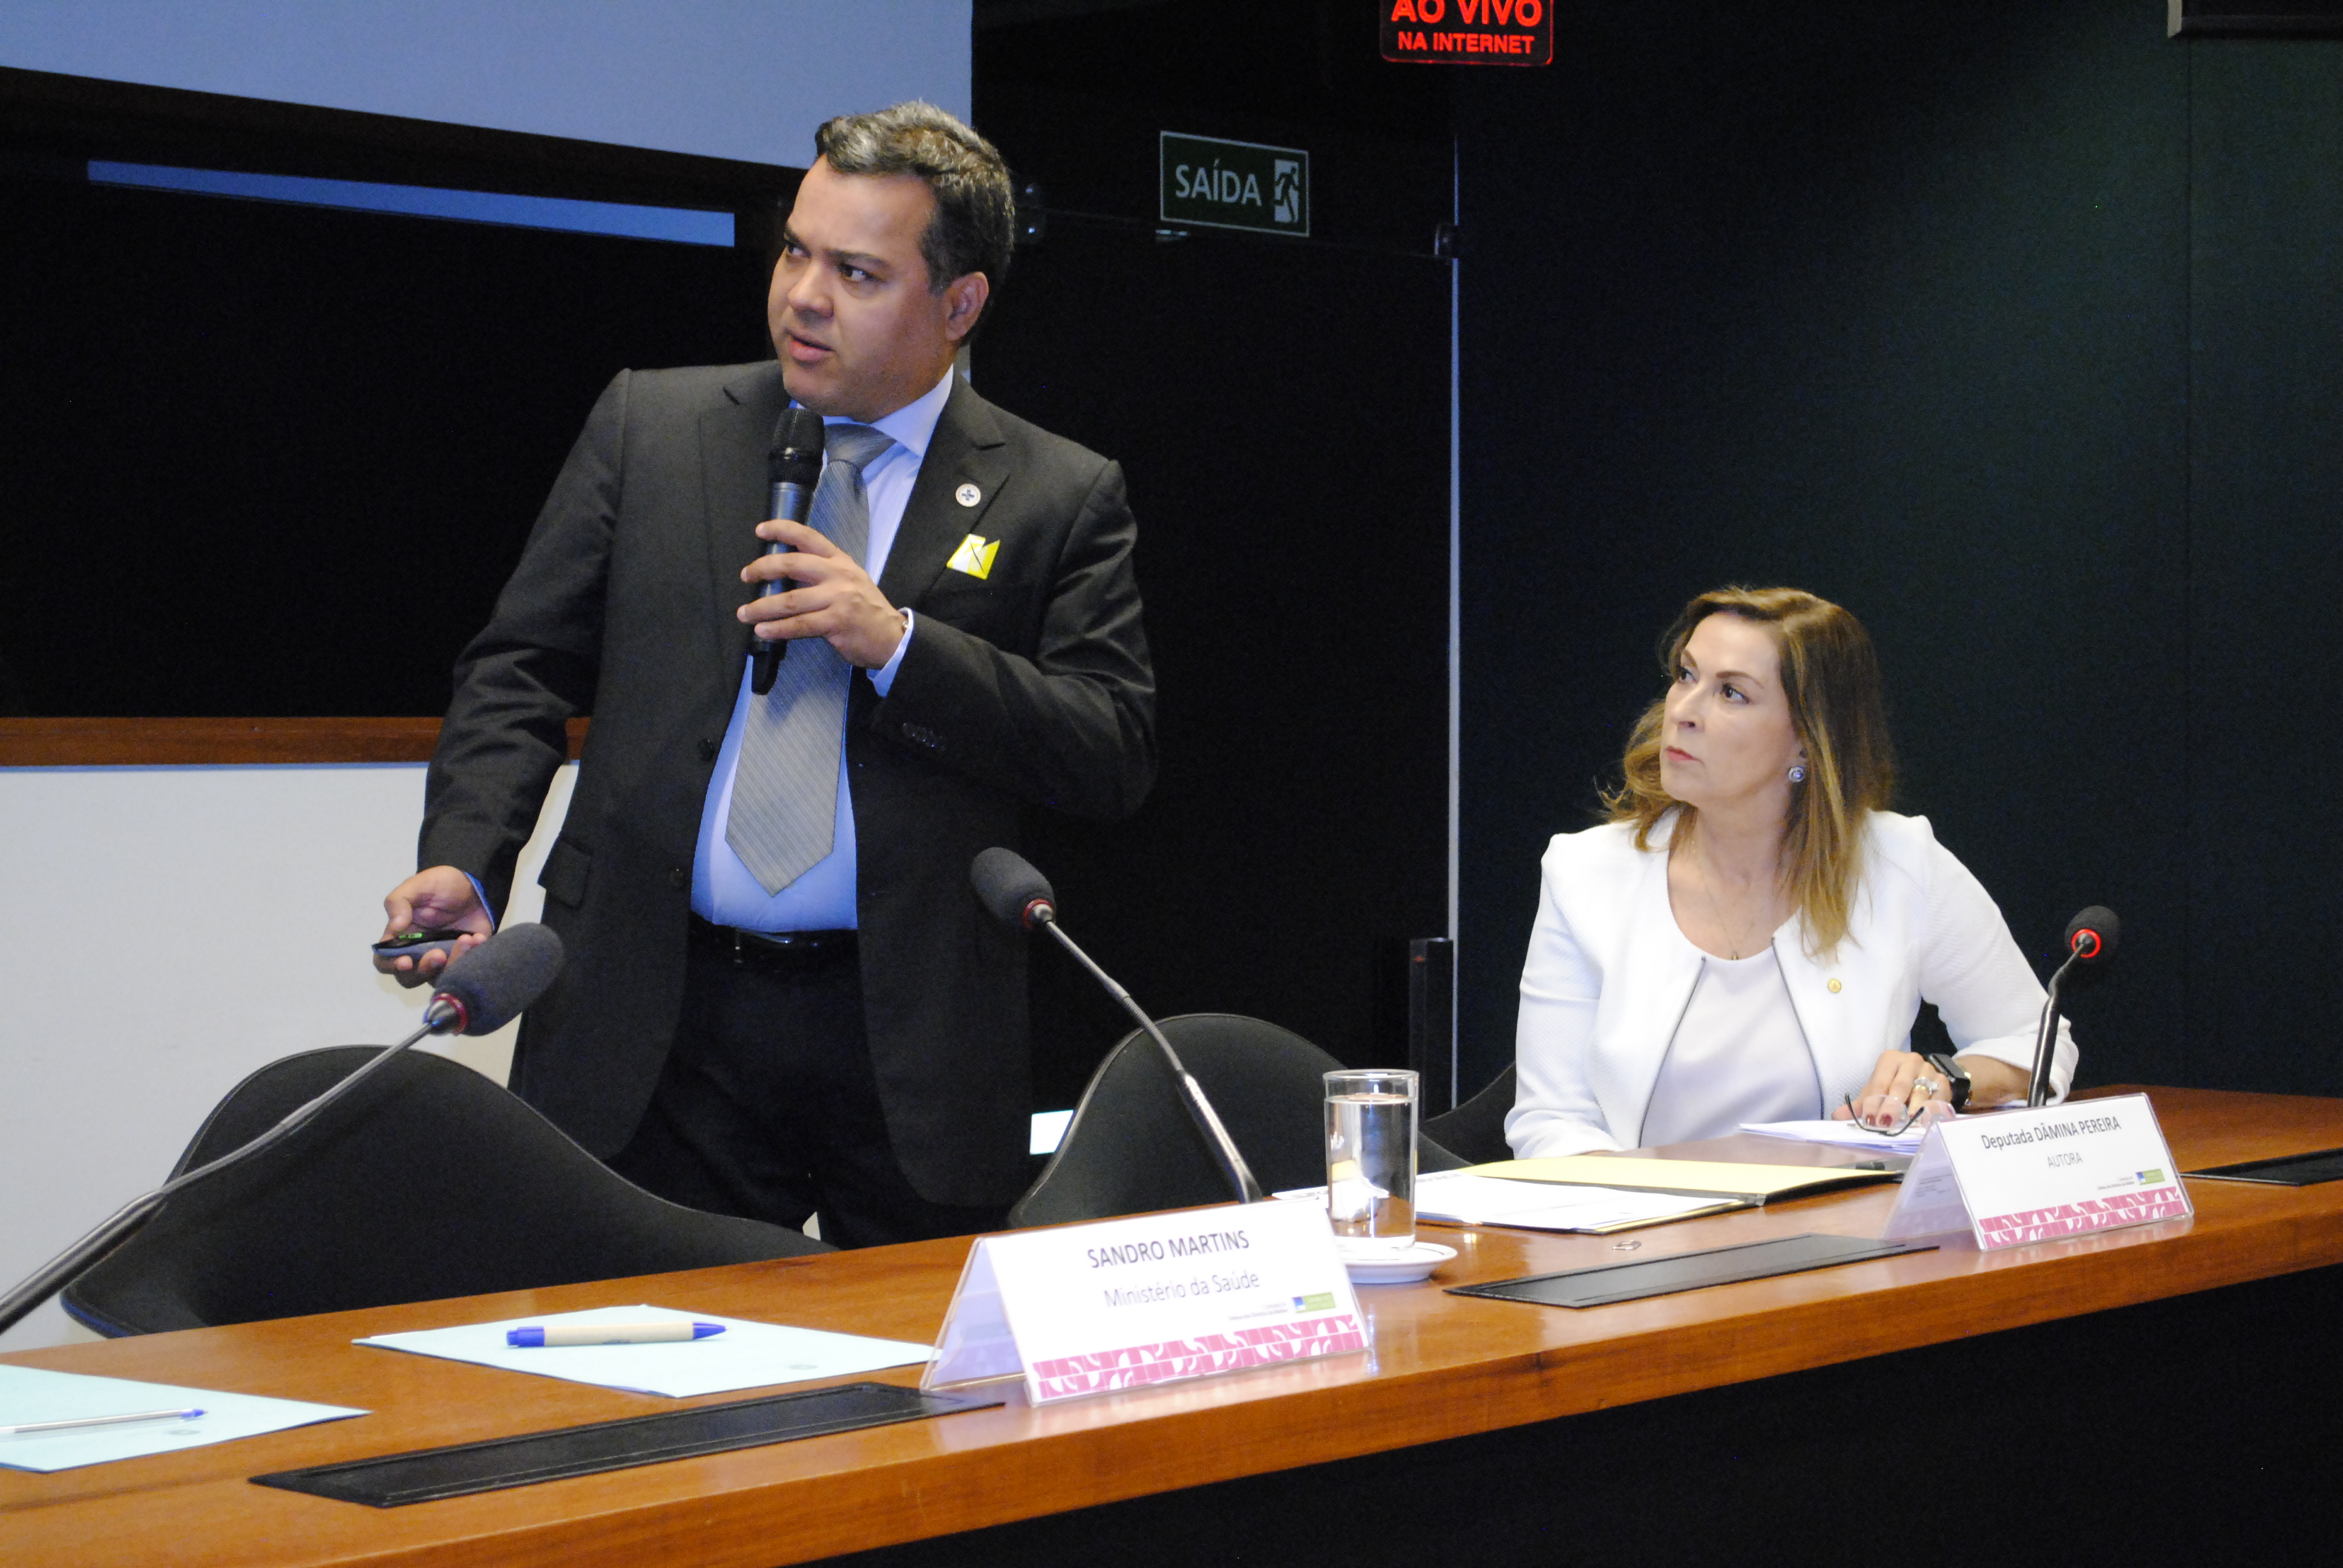  Coordenador da Coordenação-Geral de Atenção às Pessoas com Doenças Crônicas do Ministério da Saúde, Sandro Martins. 